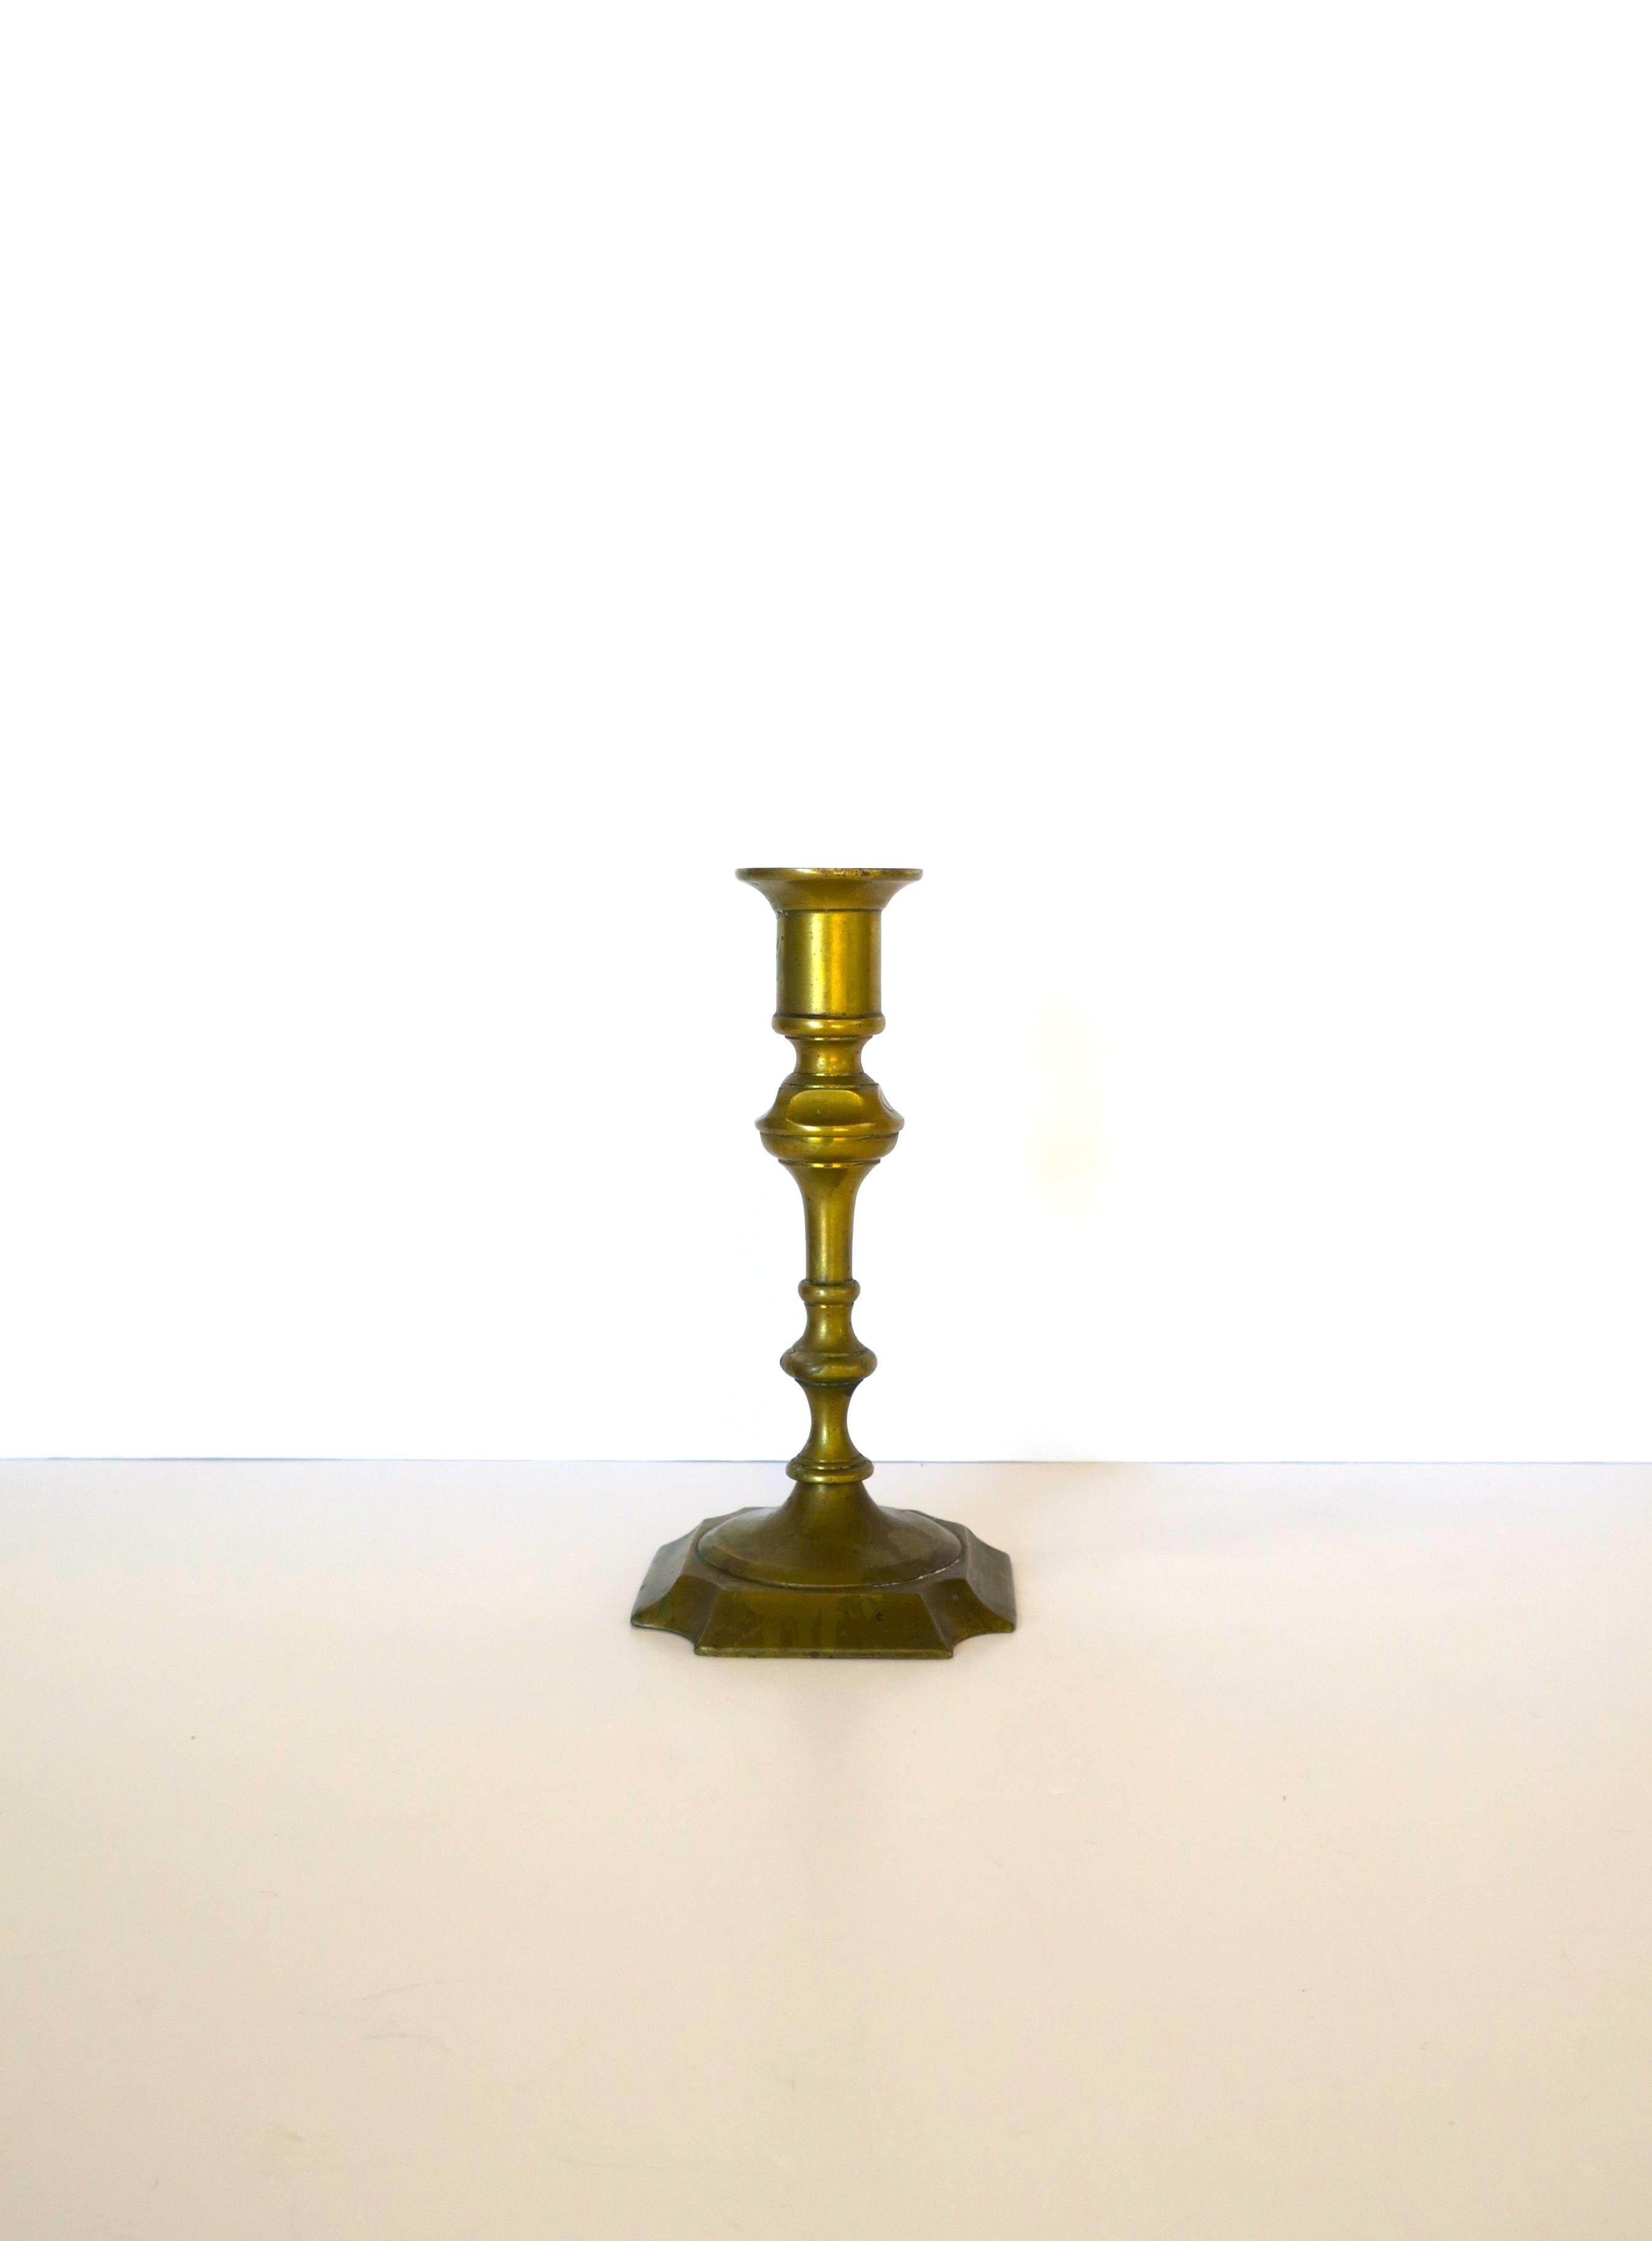 Authentischer englischer Kerzenhalter aus Messing, ca. 18.-19. Jahrhundert, England. Kerzenständer aus massivem Messing. Das Stück ist auf der Unterseite mit 